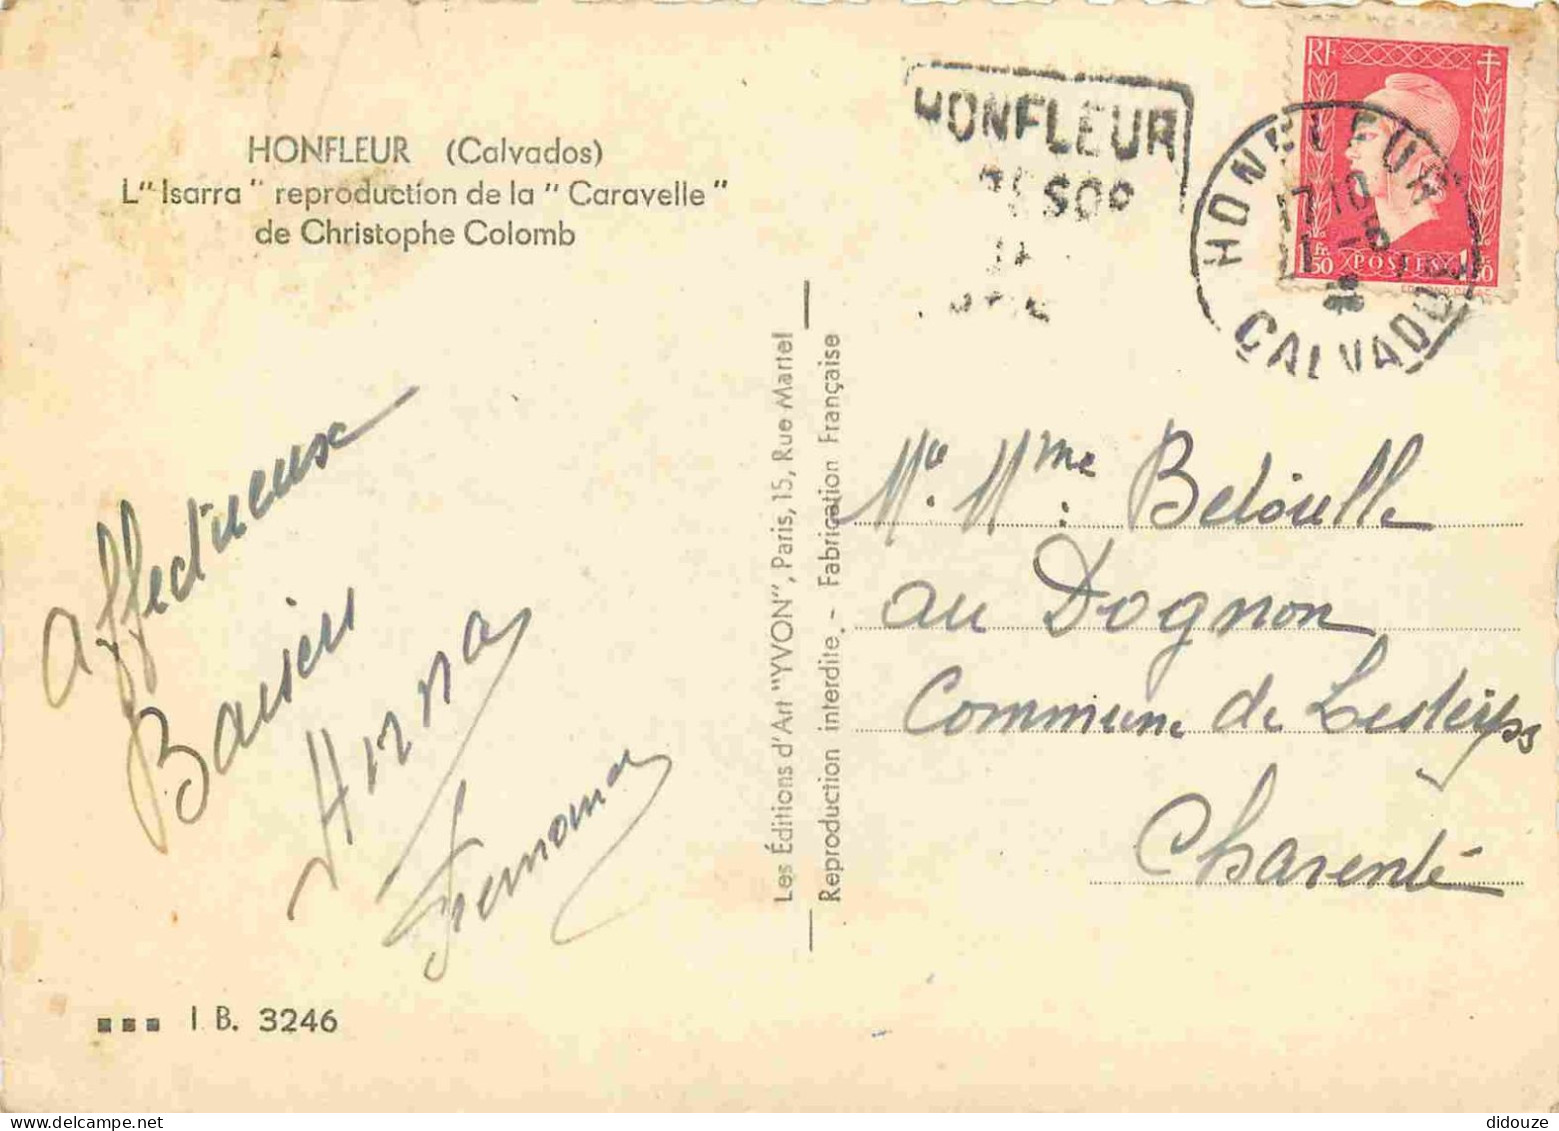 14 - Honfleur - L'lsarra Reprodufctlon De La Caravelle De Christophe Colomb - Bateaux - Carte Dentelée - CPSM Grand Form - Honfleur